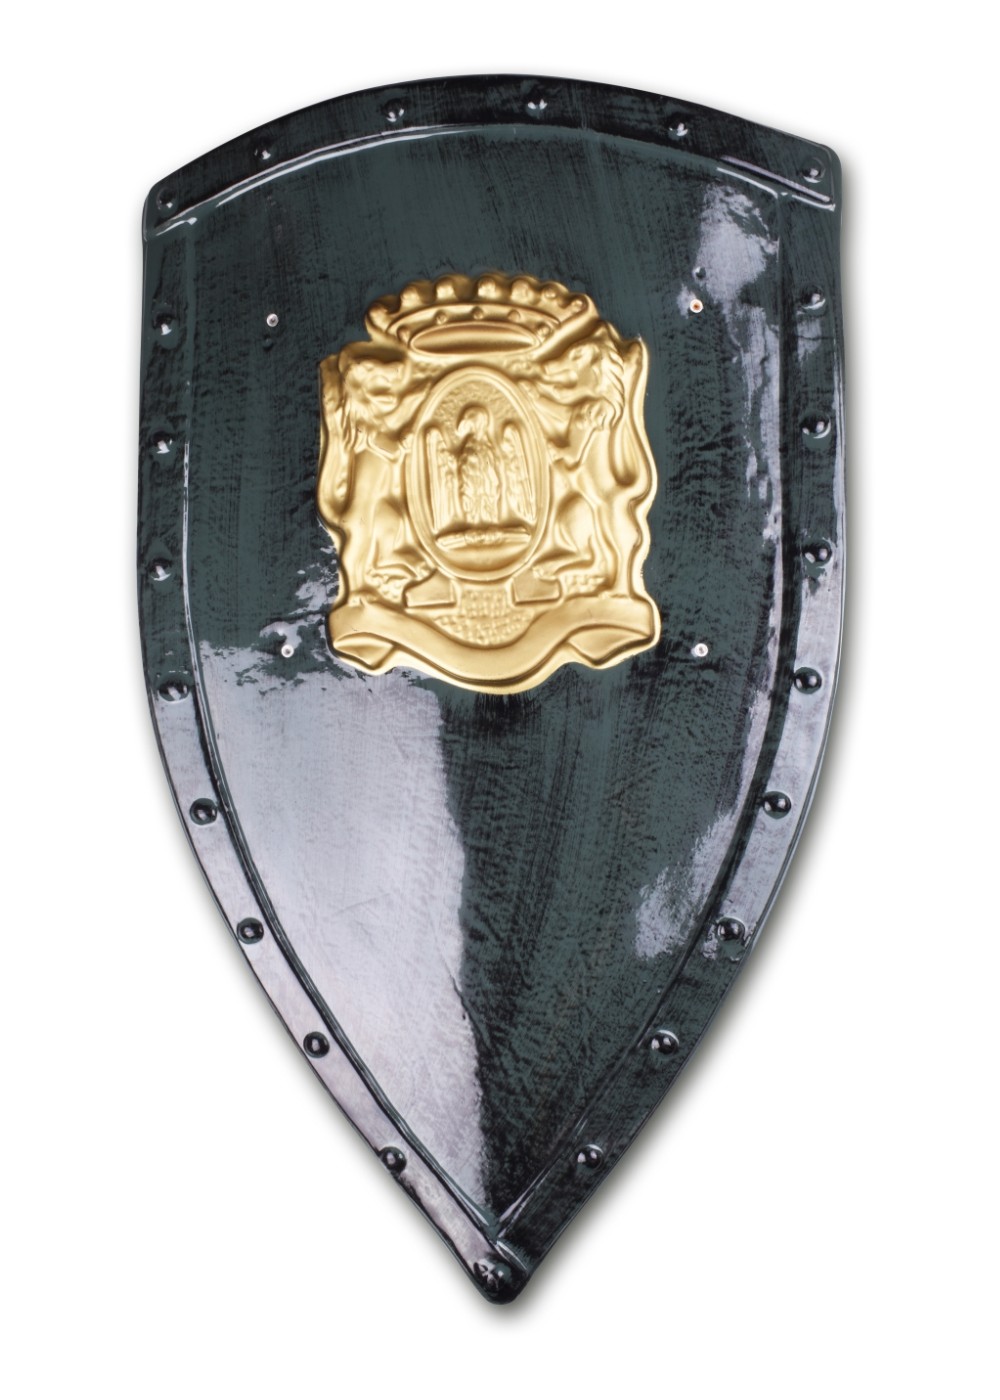  Royal Shield